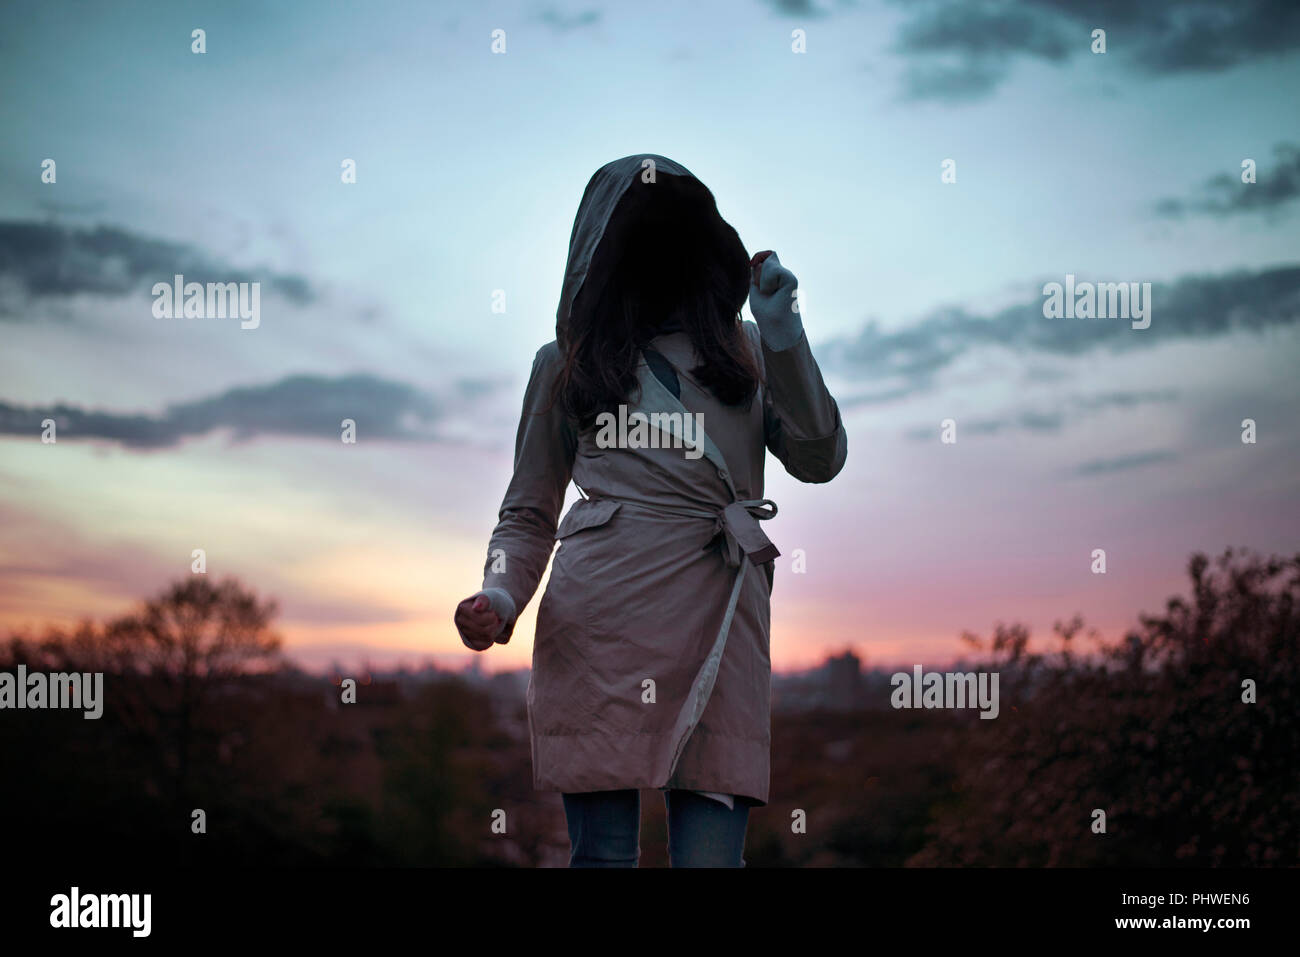 Die anonyme Frau bekleidet mit Kapuze Trenchcoat Tanz in den Sonnenuntergang. Geheimnisvoll, kreativ-travel/lifestyle Konzept. London, Großbritannien Stockfoto